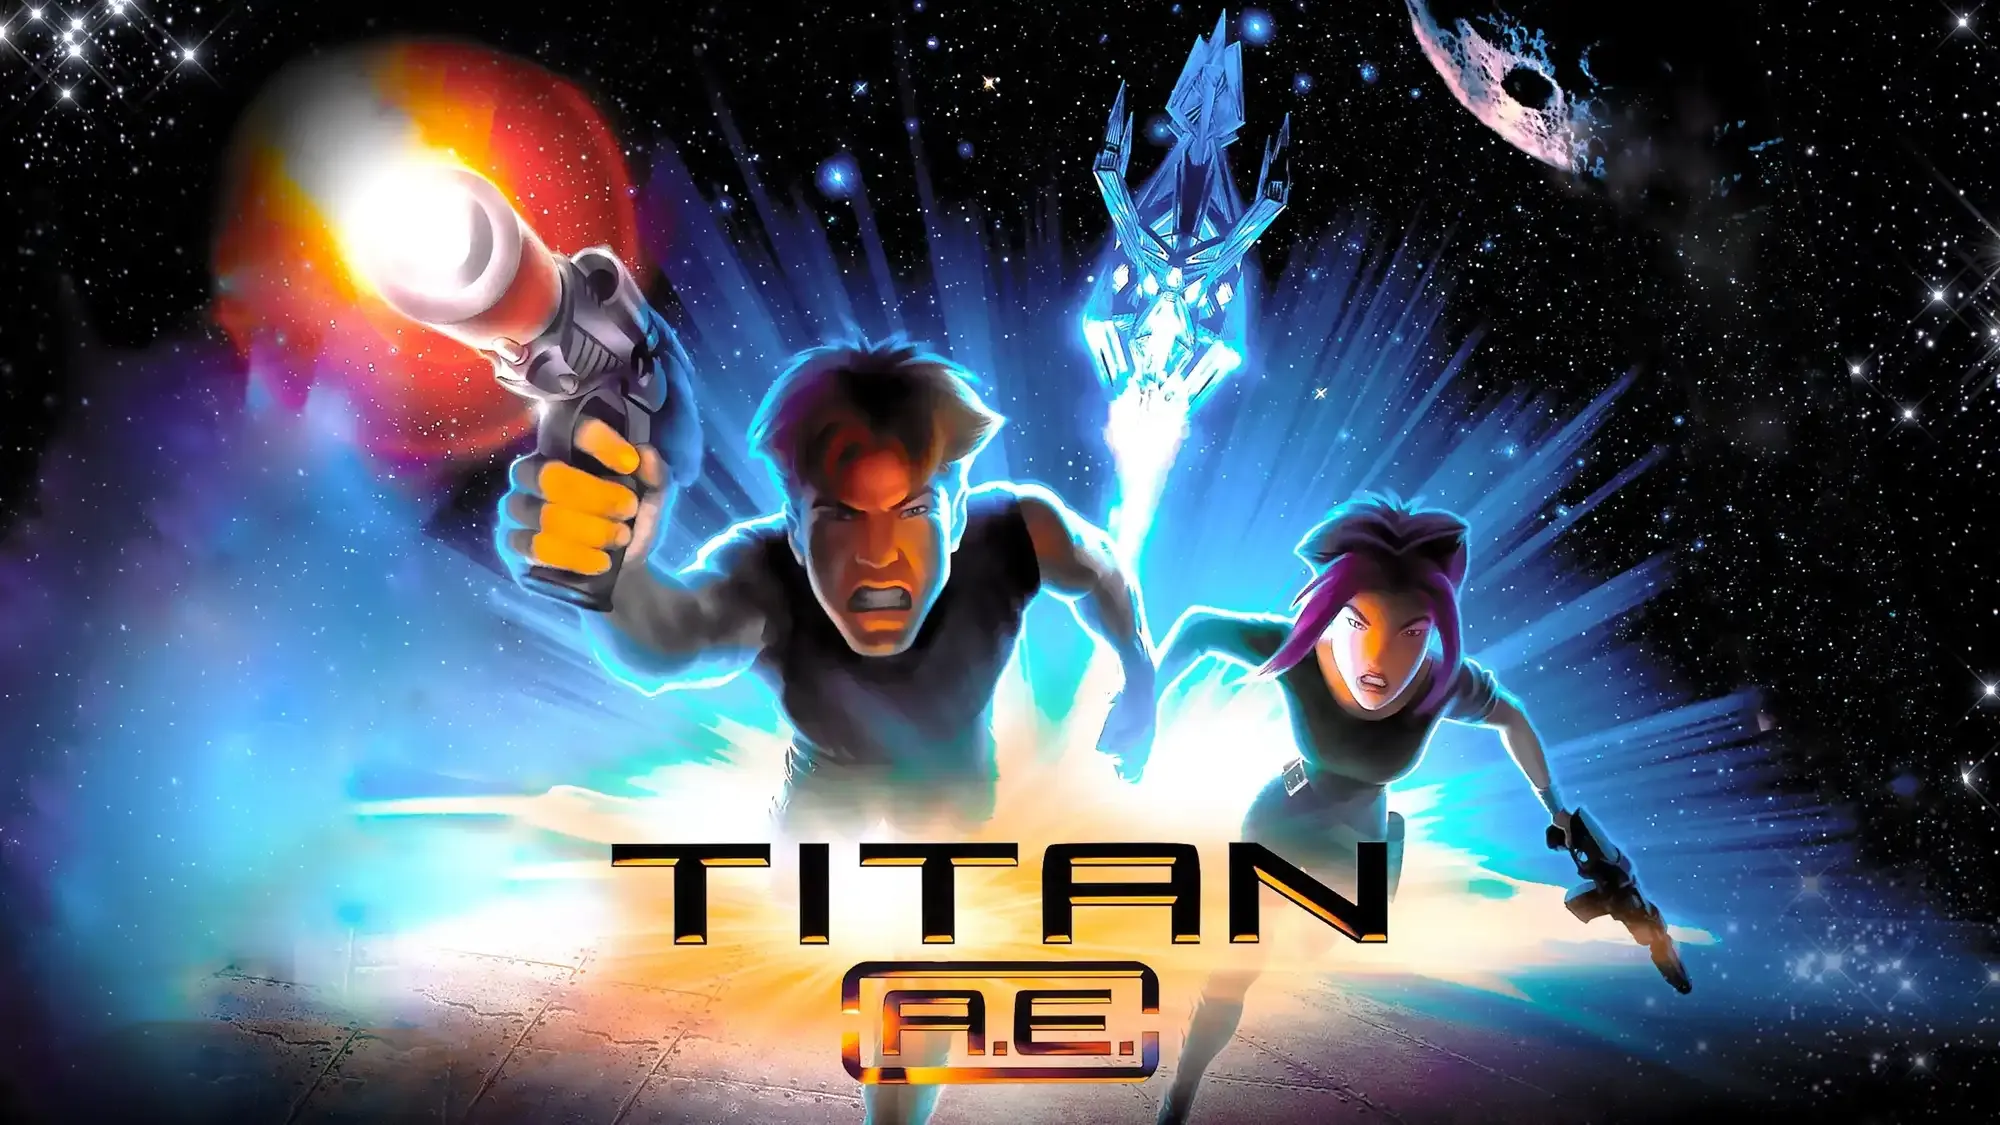 Titan A.E. movie review